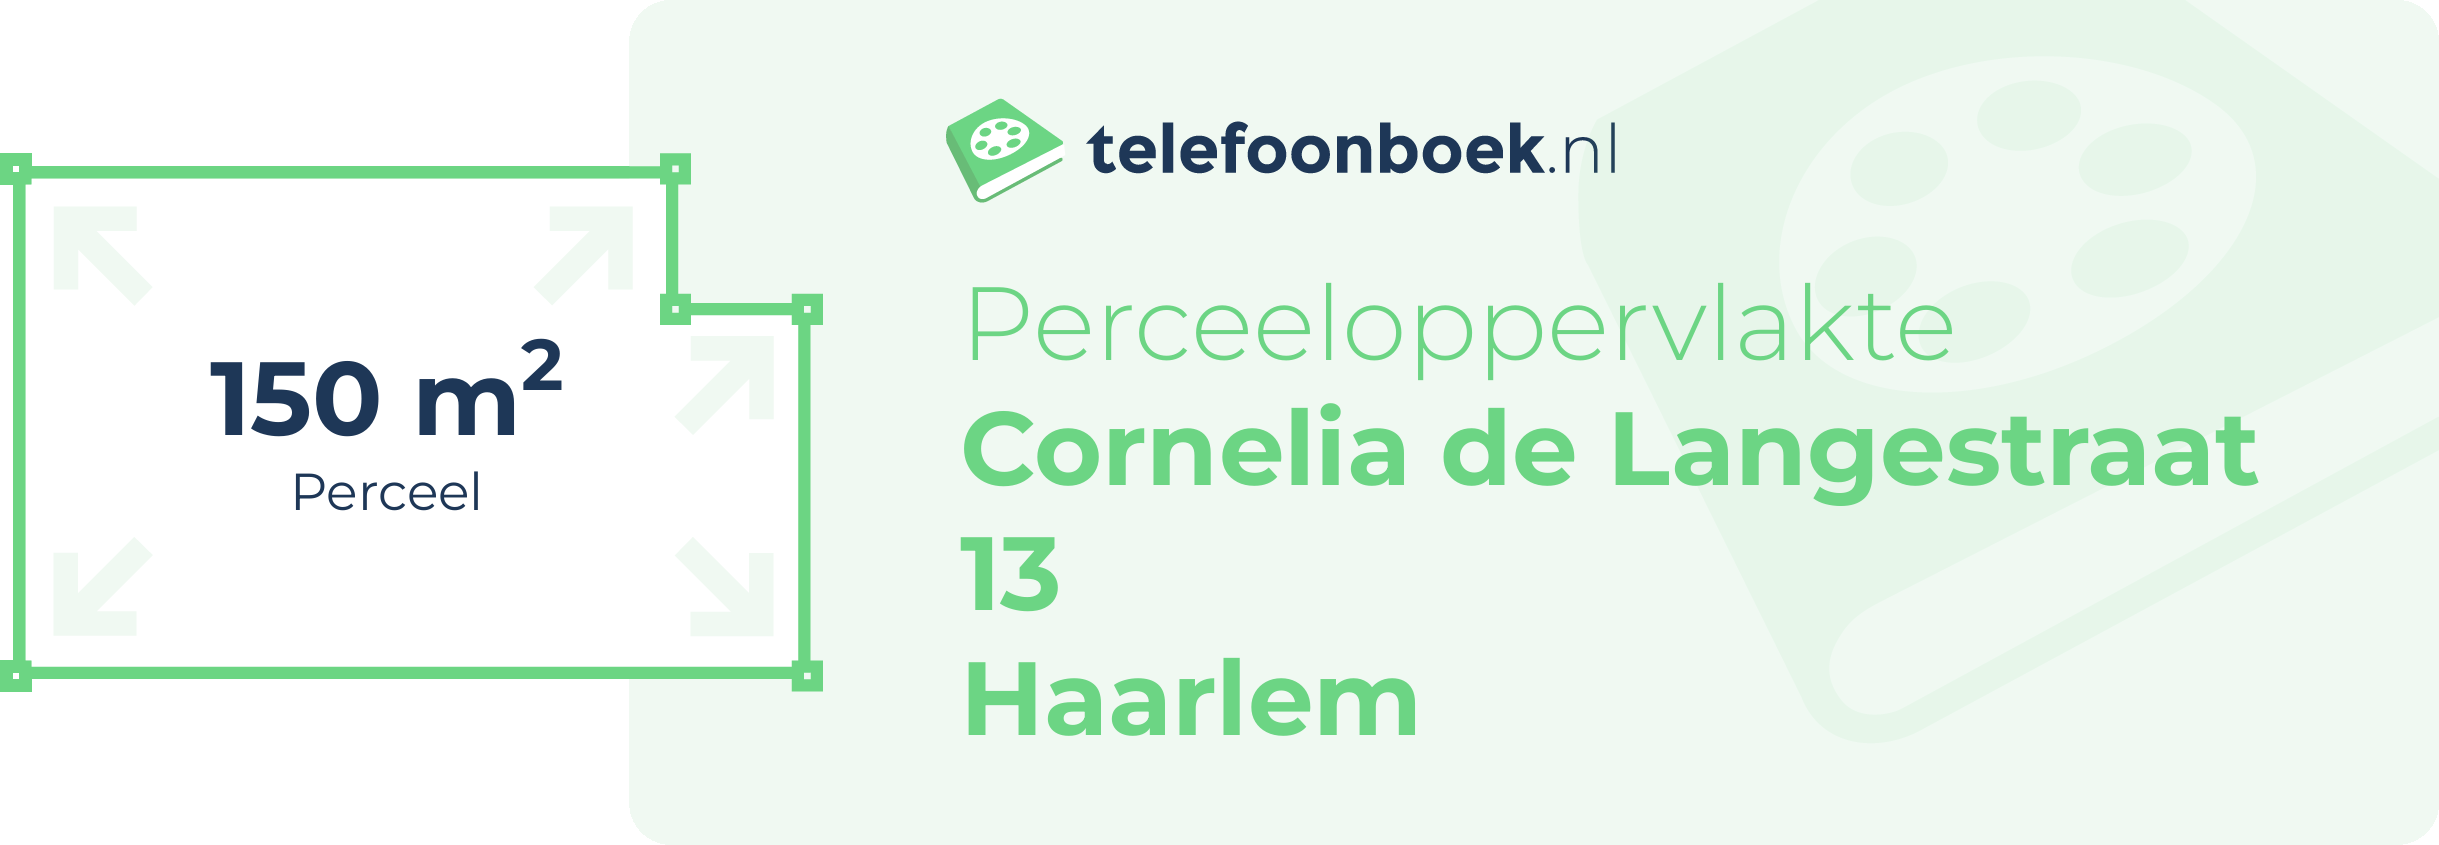 Perceeloppervlakte Cornelia De Langestraat 13 Haarlem